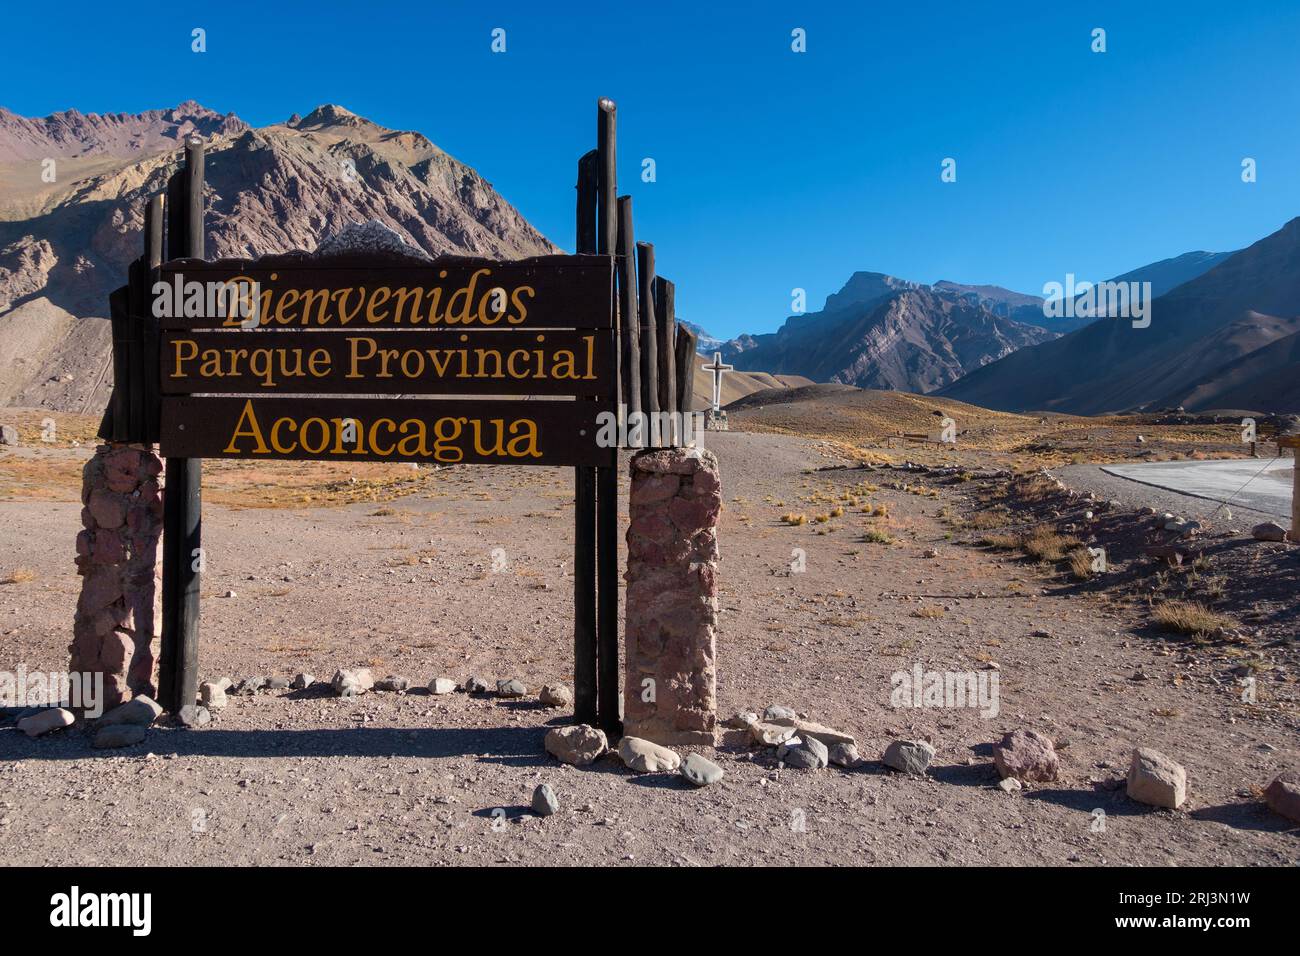 Willkommen Holzbrett Post am Eingang zum Mount Aconcagua Provincial Park. Landschaftlich Reizvolle Landschaft, Anden Mountain Range, Argentinien Stockfoto